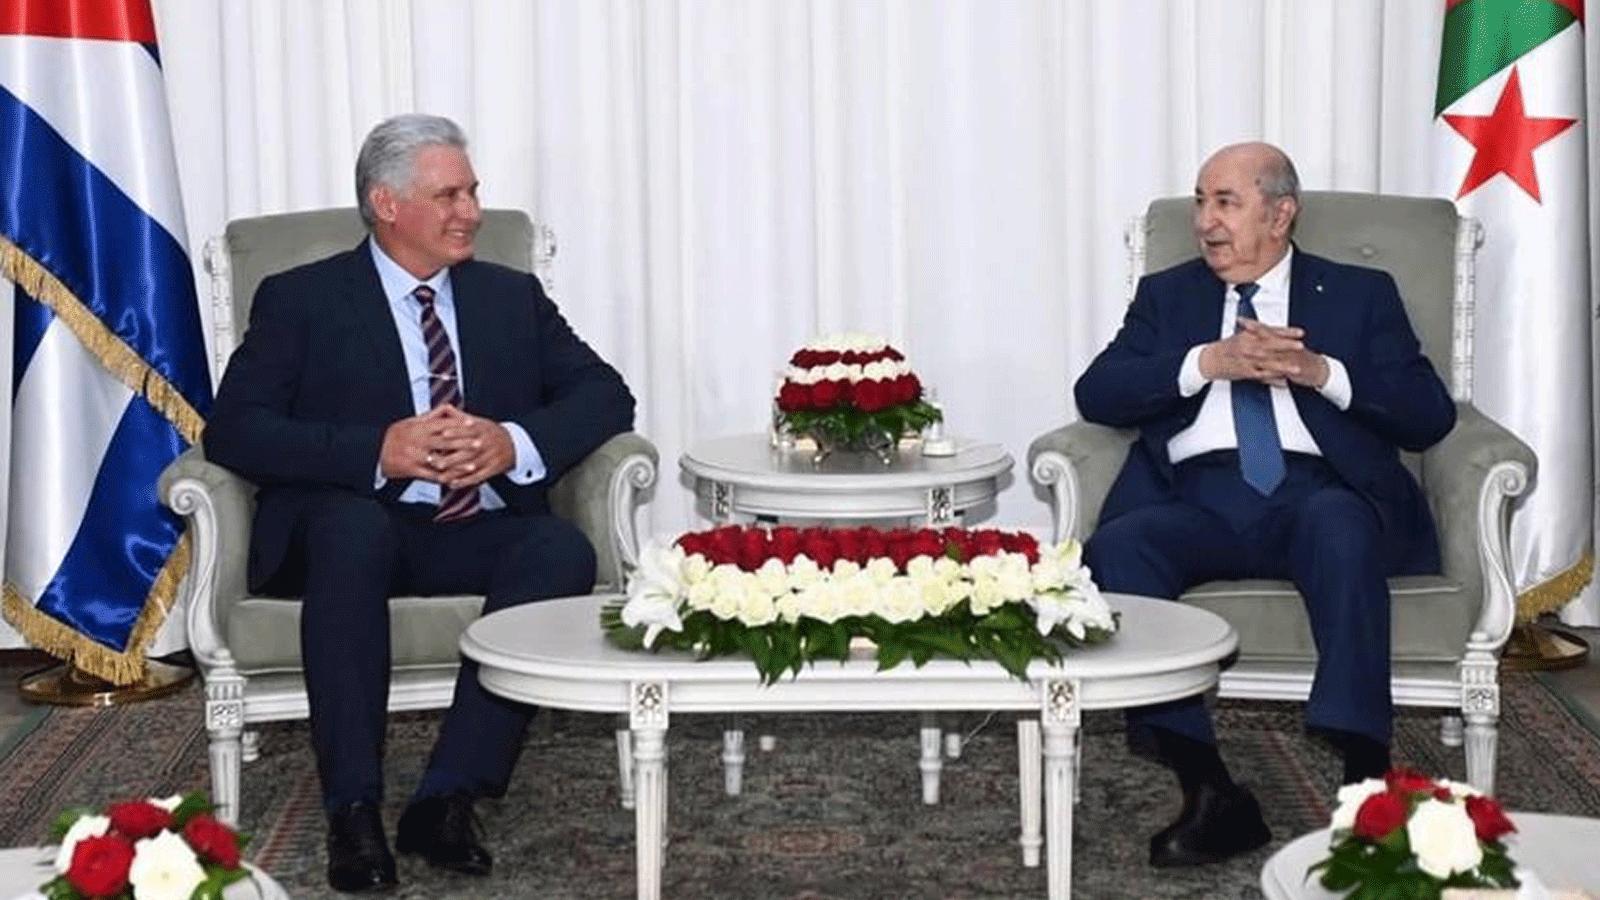  الرئيس الجزائري عبد المجيد تبون ونظيره الكوبي ميغيل دياز كانيل الذي يزور الجزائر حاليا لتعزيز العلاقات الثنائية بين البلدين(QNA)